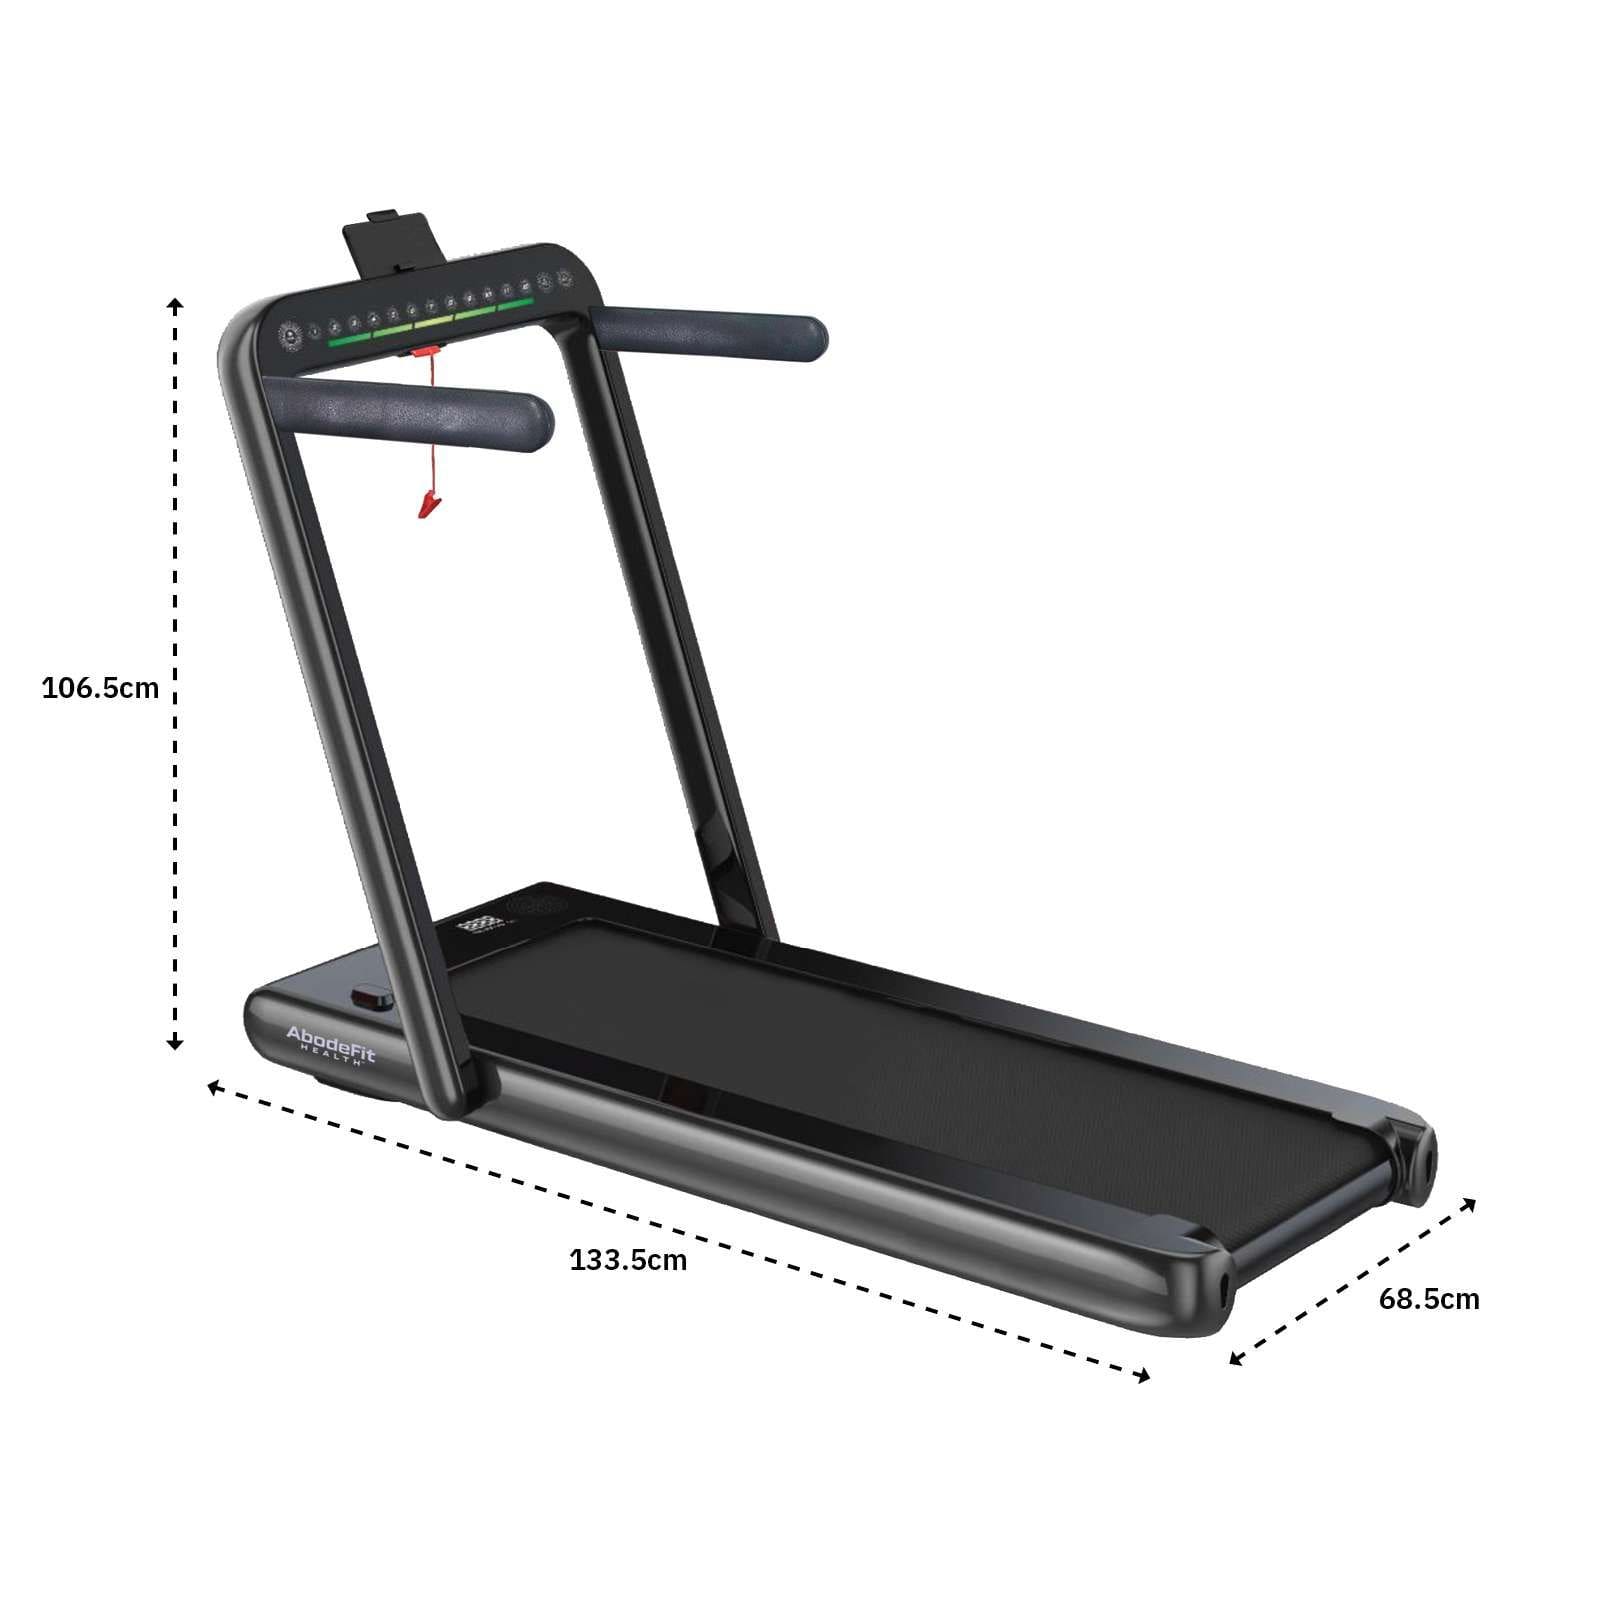 WalkSlim 610 Treadmill Dimensions